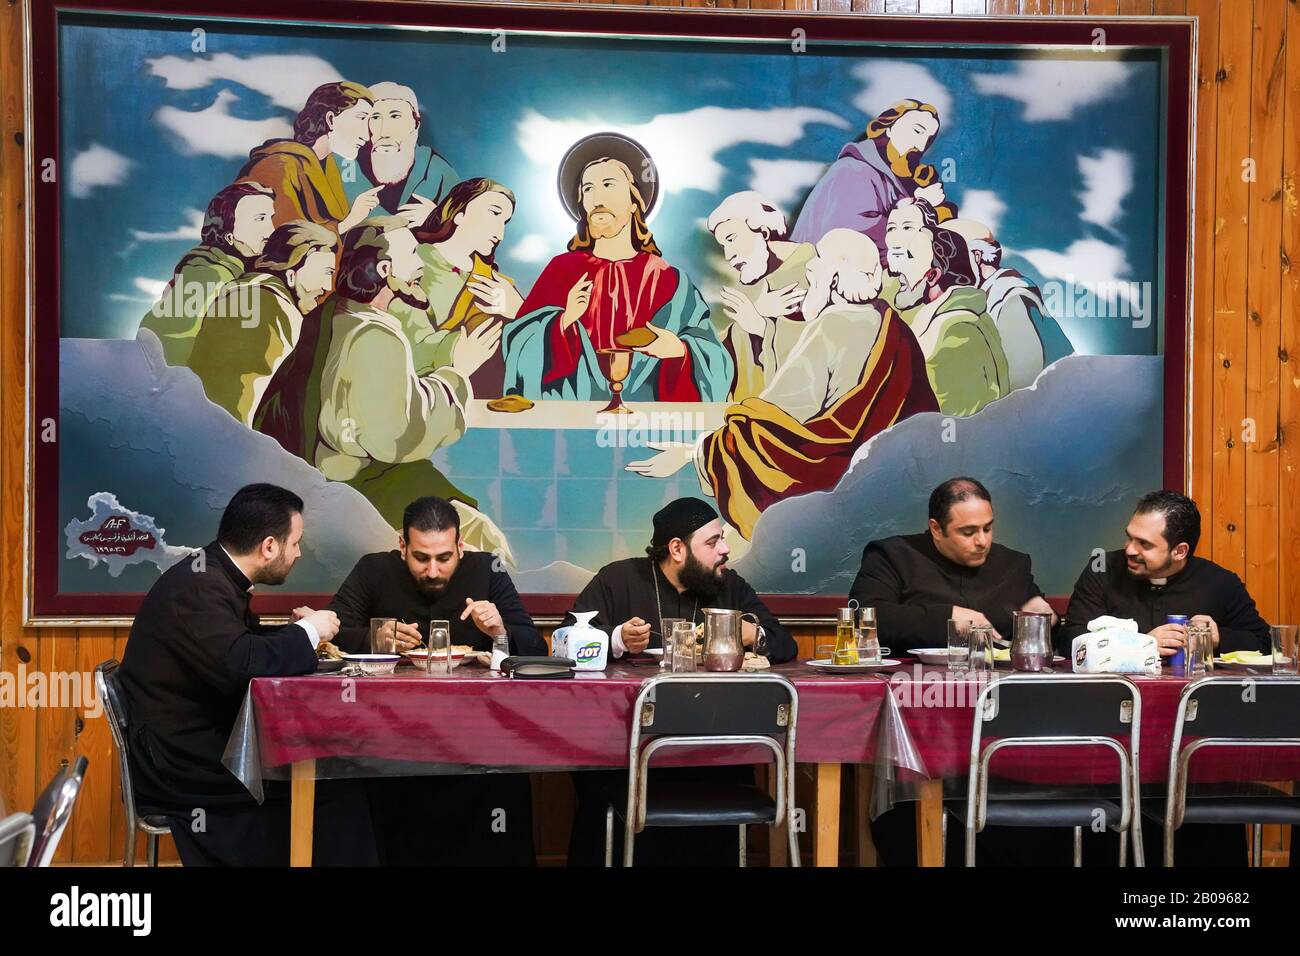 Les prêtres mangent le dîner sous une peinture à l'huile religieuse "La dernière Cène de Jésus" dans le séminaire catholique dans le district de Maadi, au Caire, en Egypte Banque D'Images